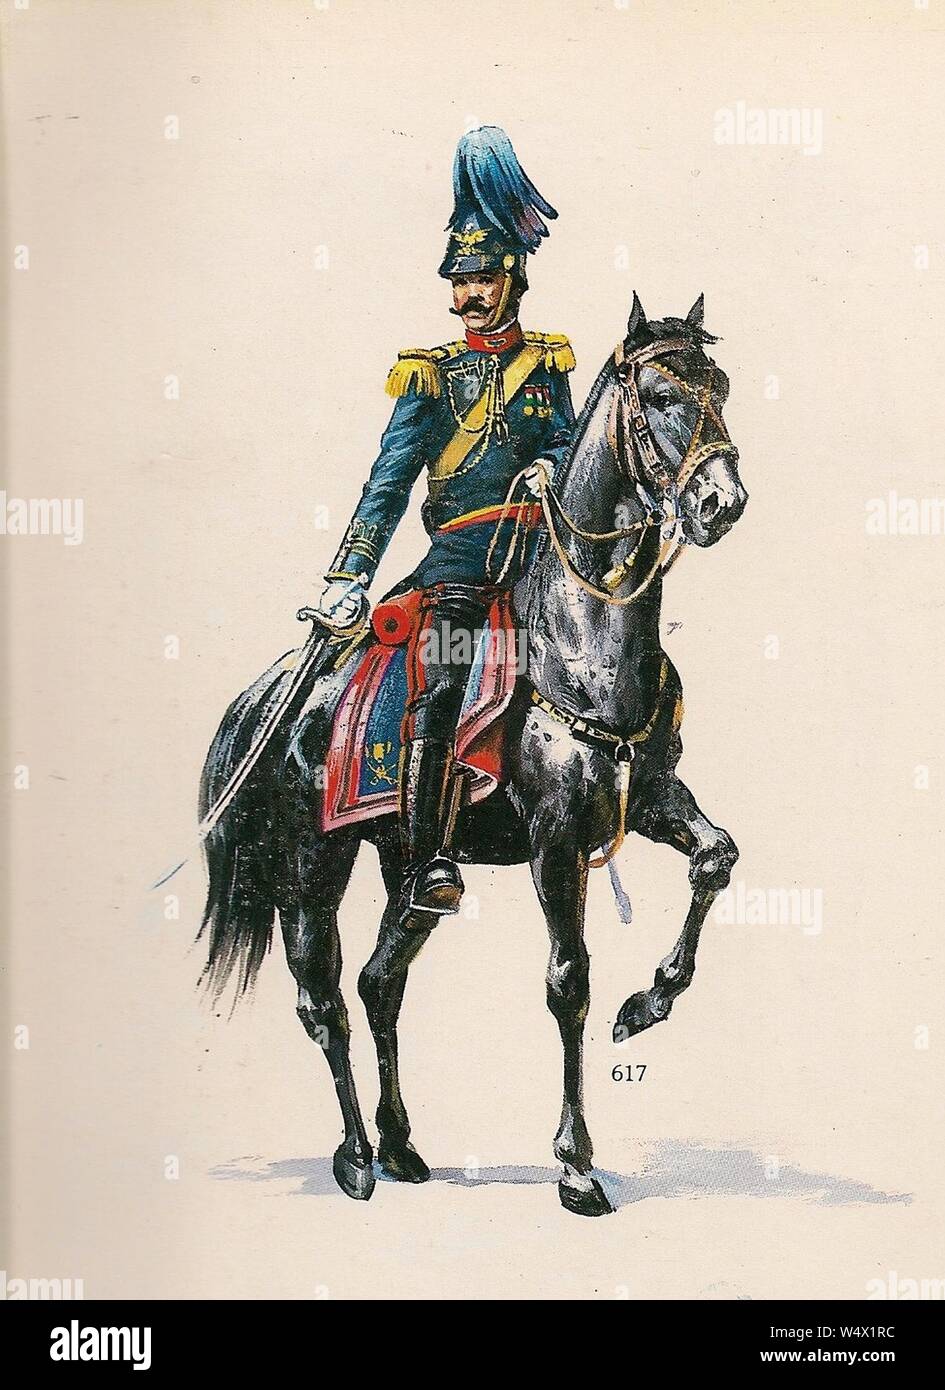 Coronel de Estado Mayor en uniforme de gala en 1914. Stock Photo